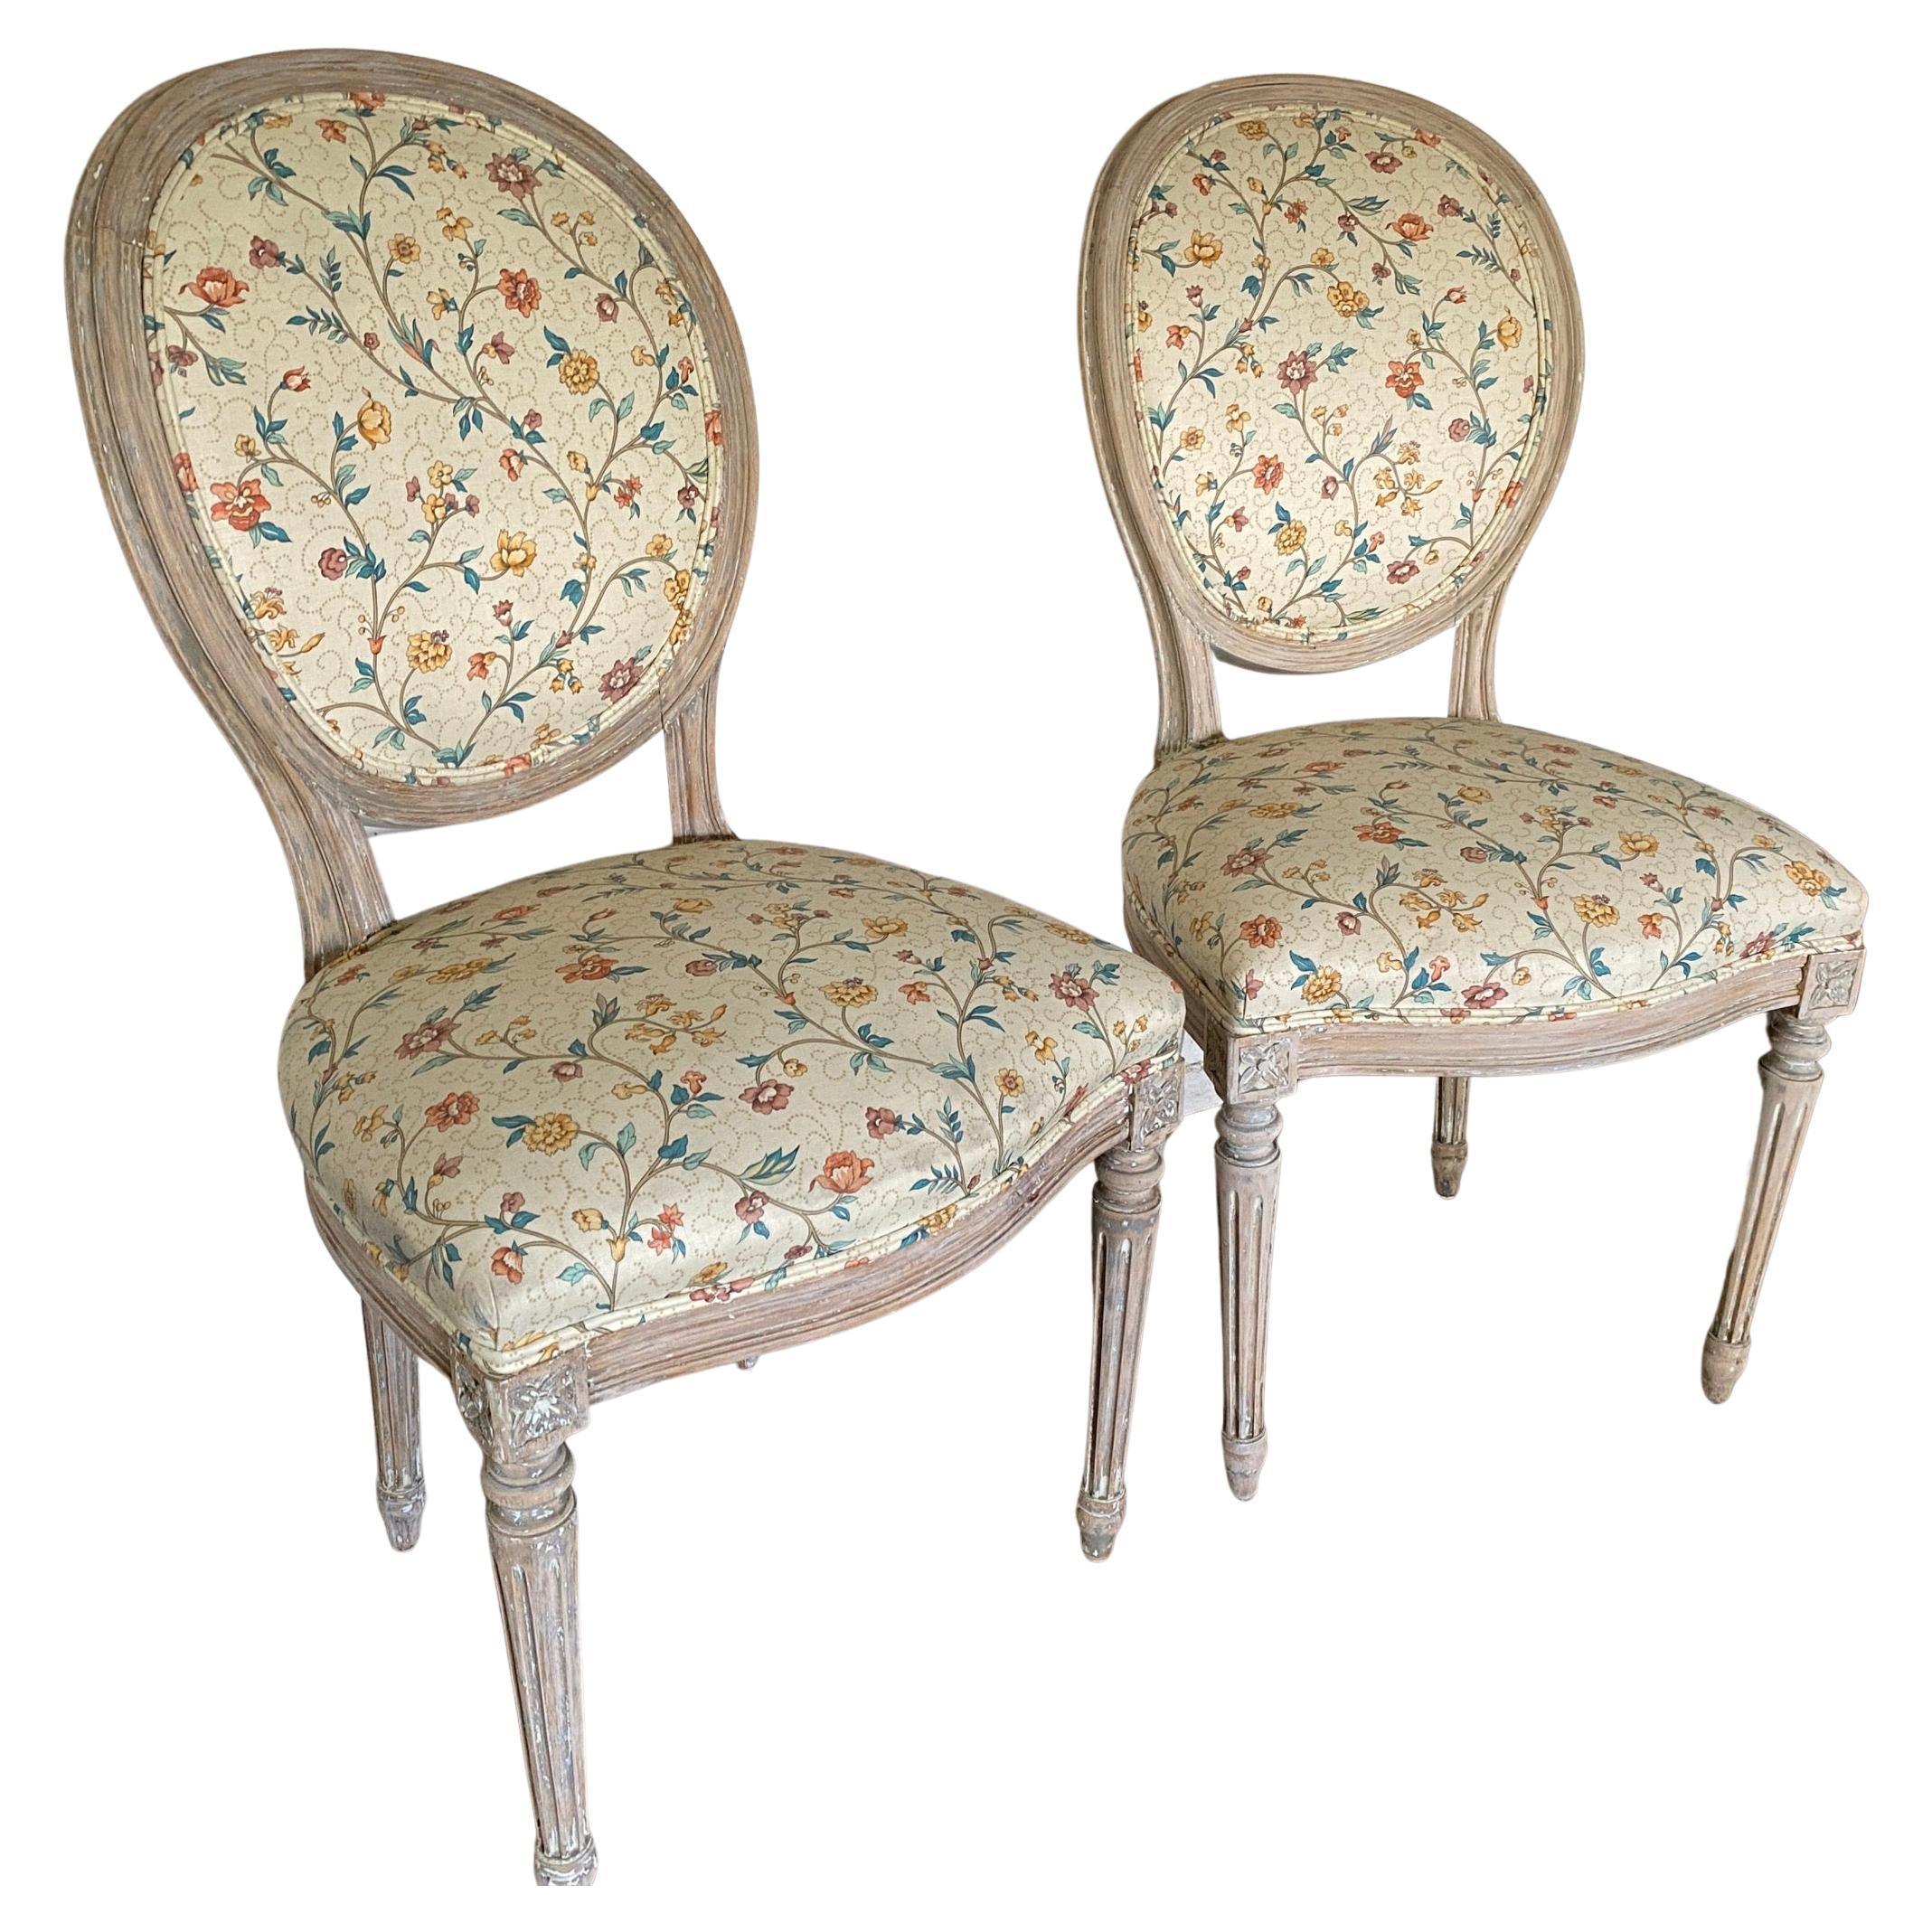 Paire de chaises d'appoint françaises de style Louis XVI, peintes et patinées à l'ancienne, à dossier ovale et pieds cannelés. La peinture dégradée donne aux chaises un caractère et un style supplémentaires. A utiliser pour la salle à manger ou dans